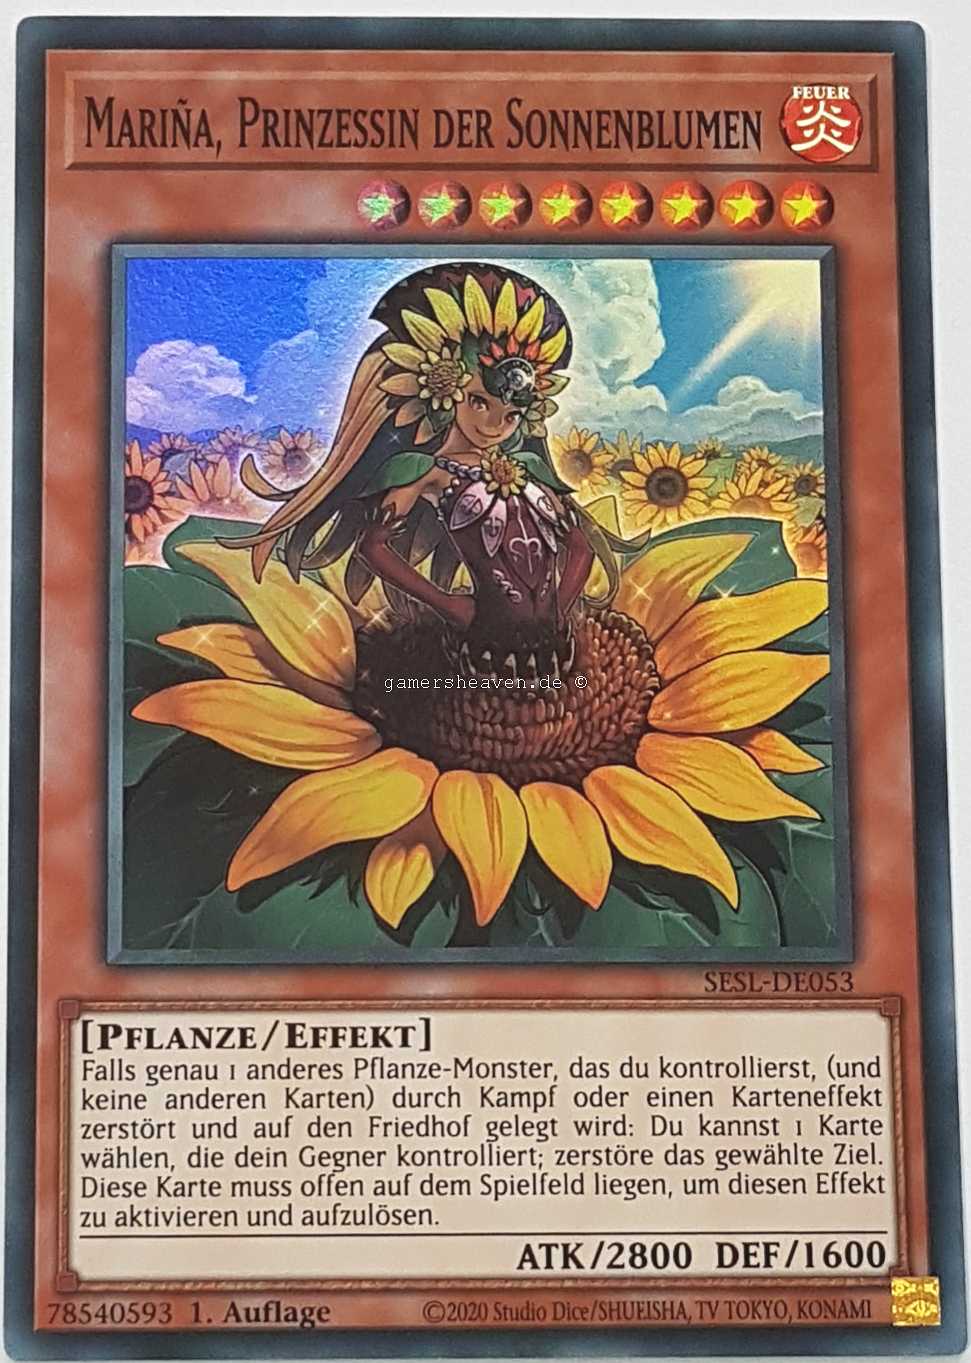 Mariña, Prinzessin der Sonnenblumen SESL-DE053 ist in Super Rare Yu-Gi-Oh Karte aus Secret Slayers 1.Auflage